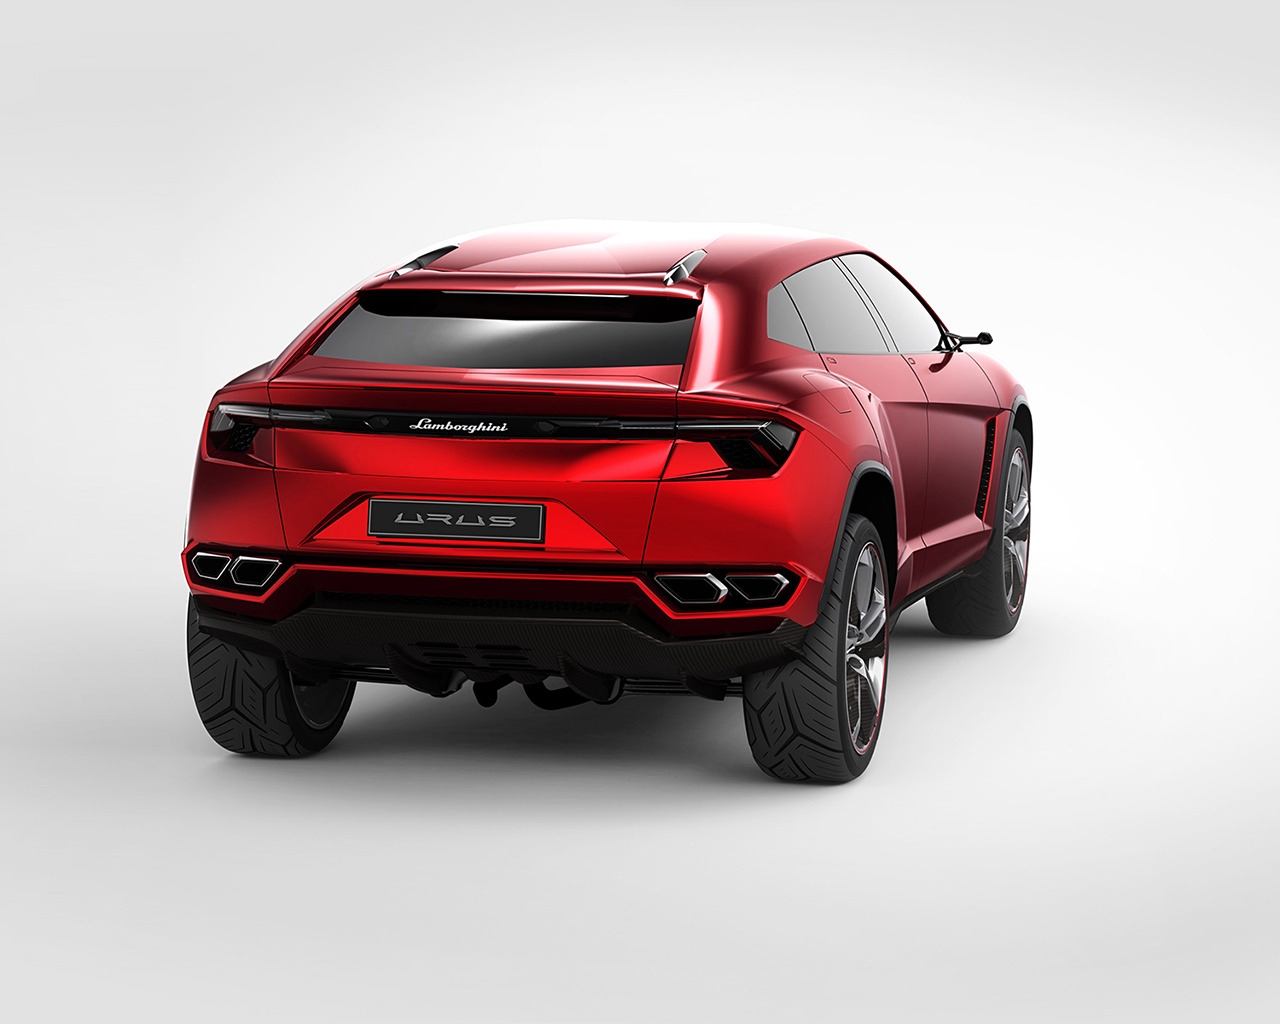 Lamborghini Urus Concept Rear Studio for 1280 x 1024 resolution